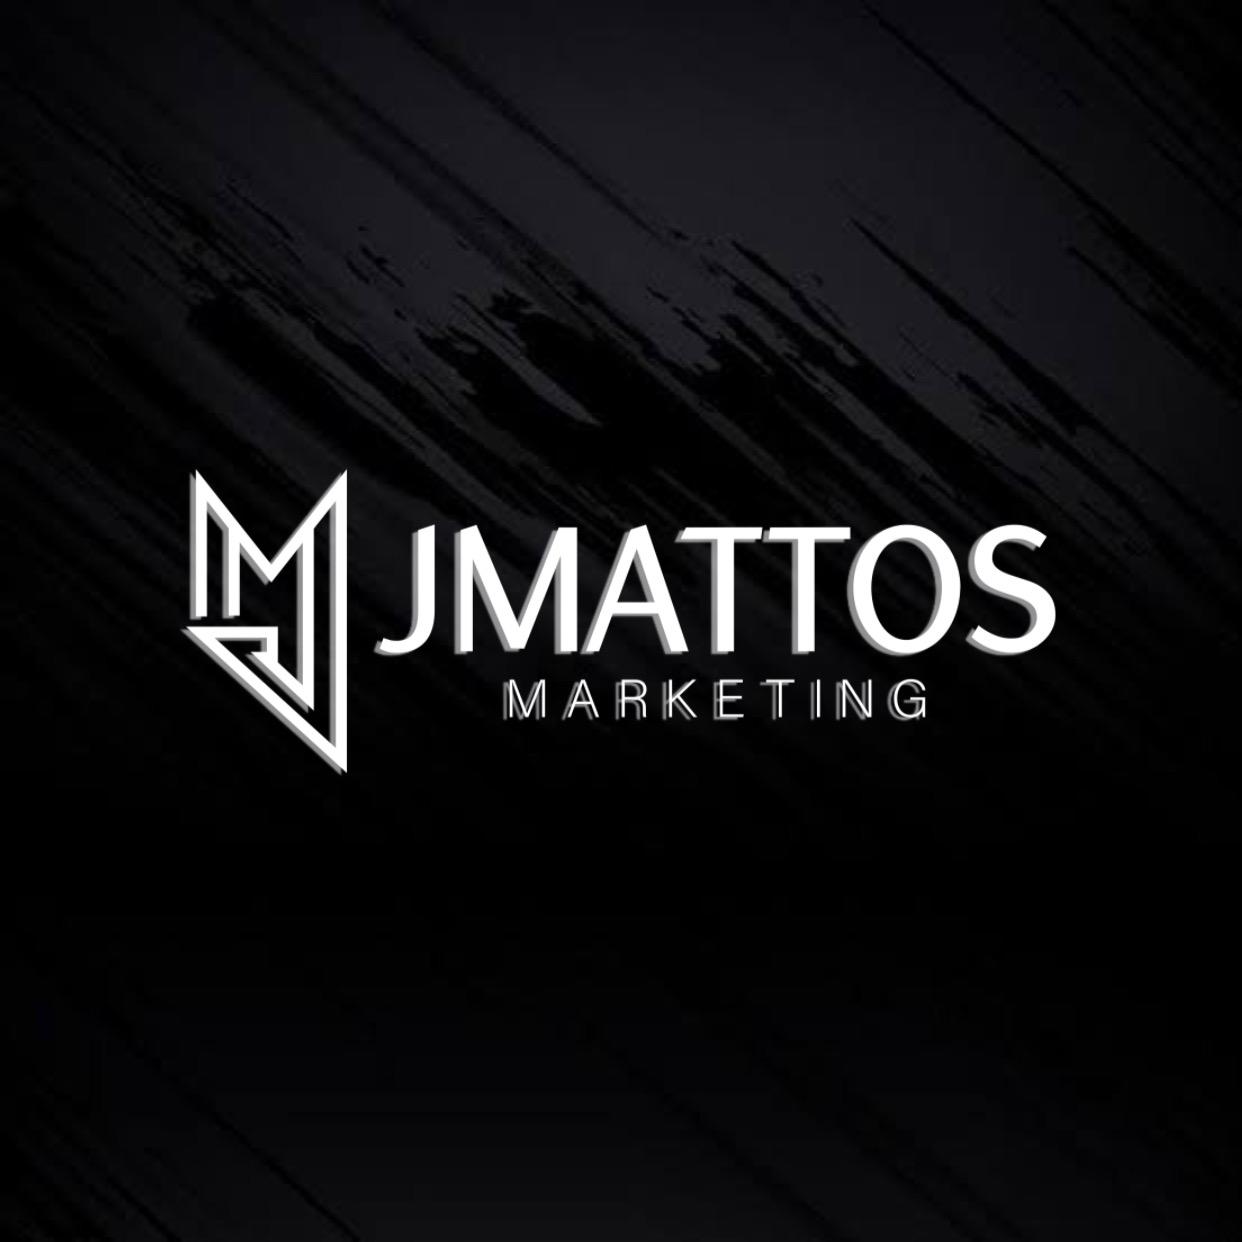 JM Mattos marketing